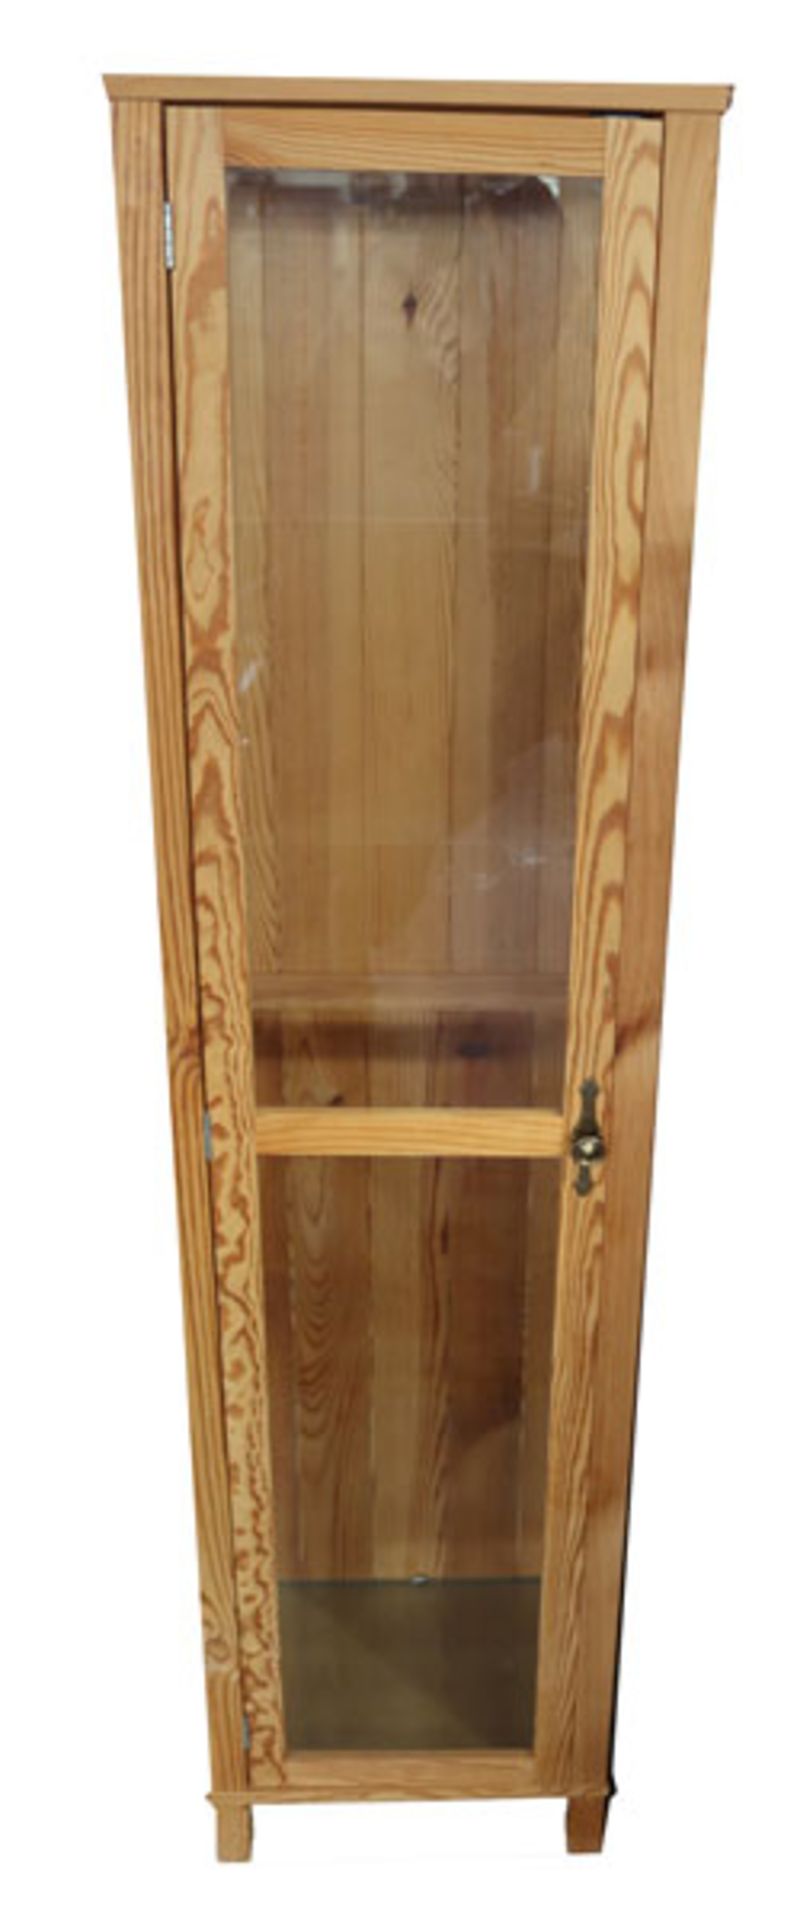 Vitrinen-Schrank, Nadelholz, Korpus mit verglaster Tür und Seiten, Glasböden, H 178 cm, B 44 cm, T